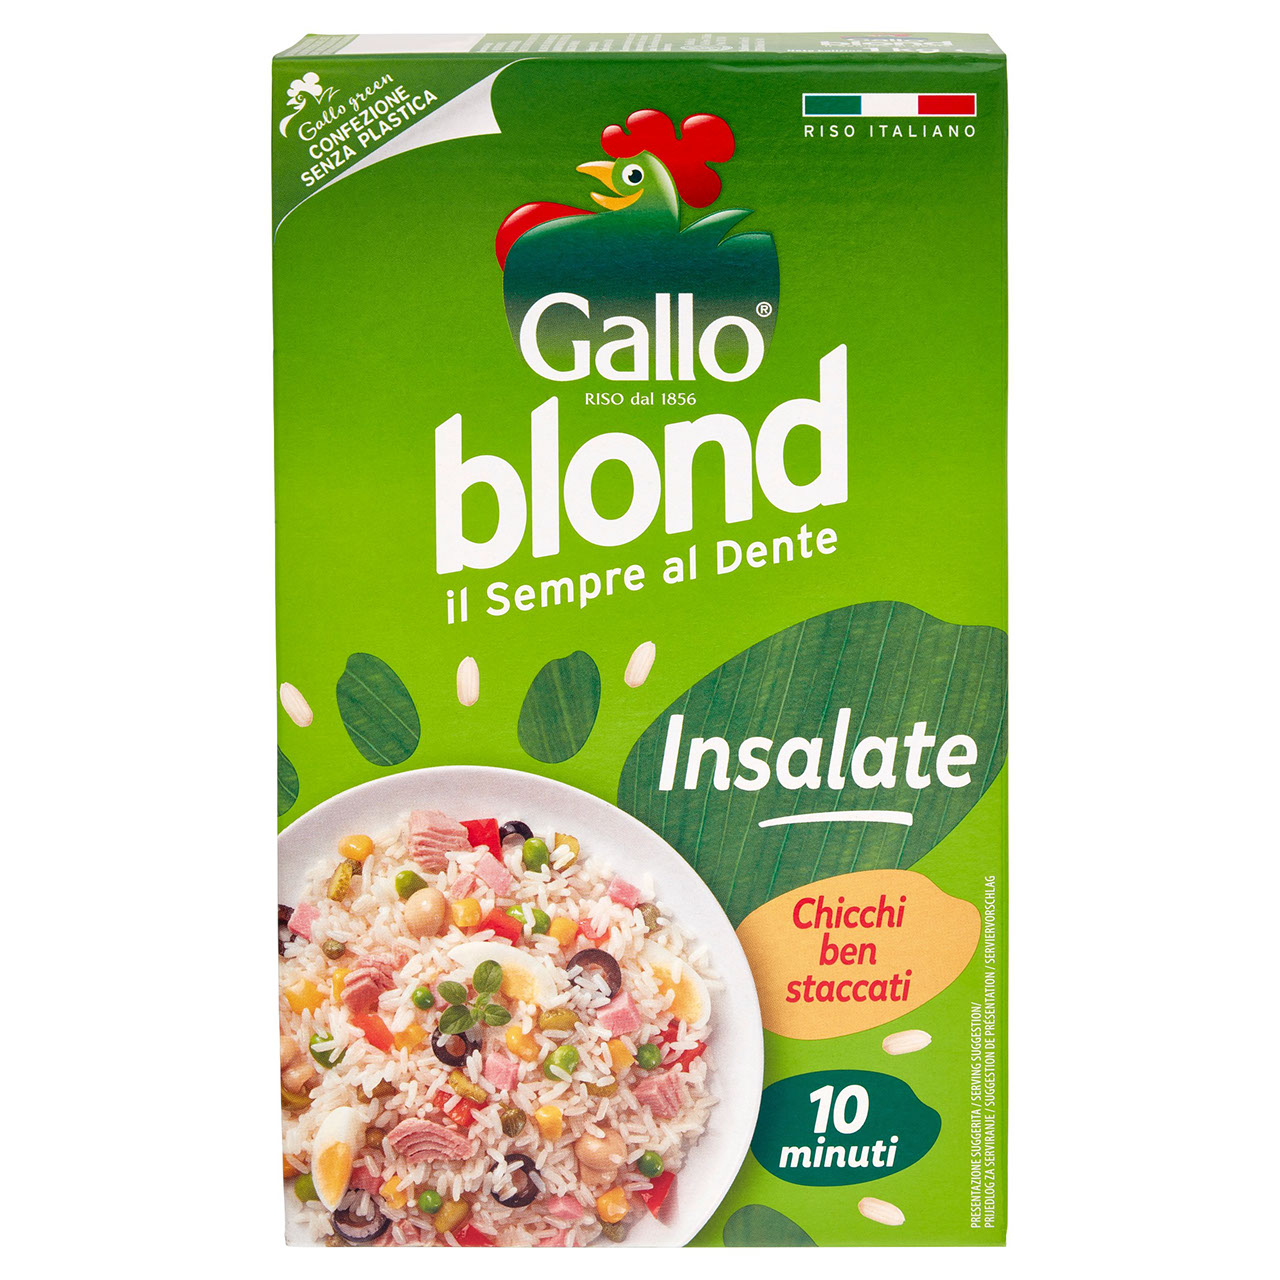 Gallo blond Insalate 1 kg in vendita online